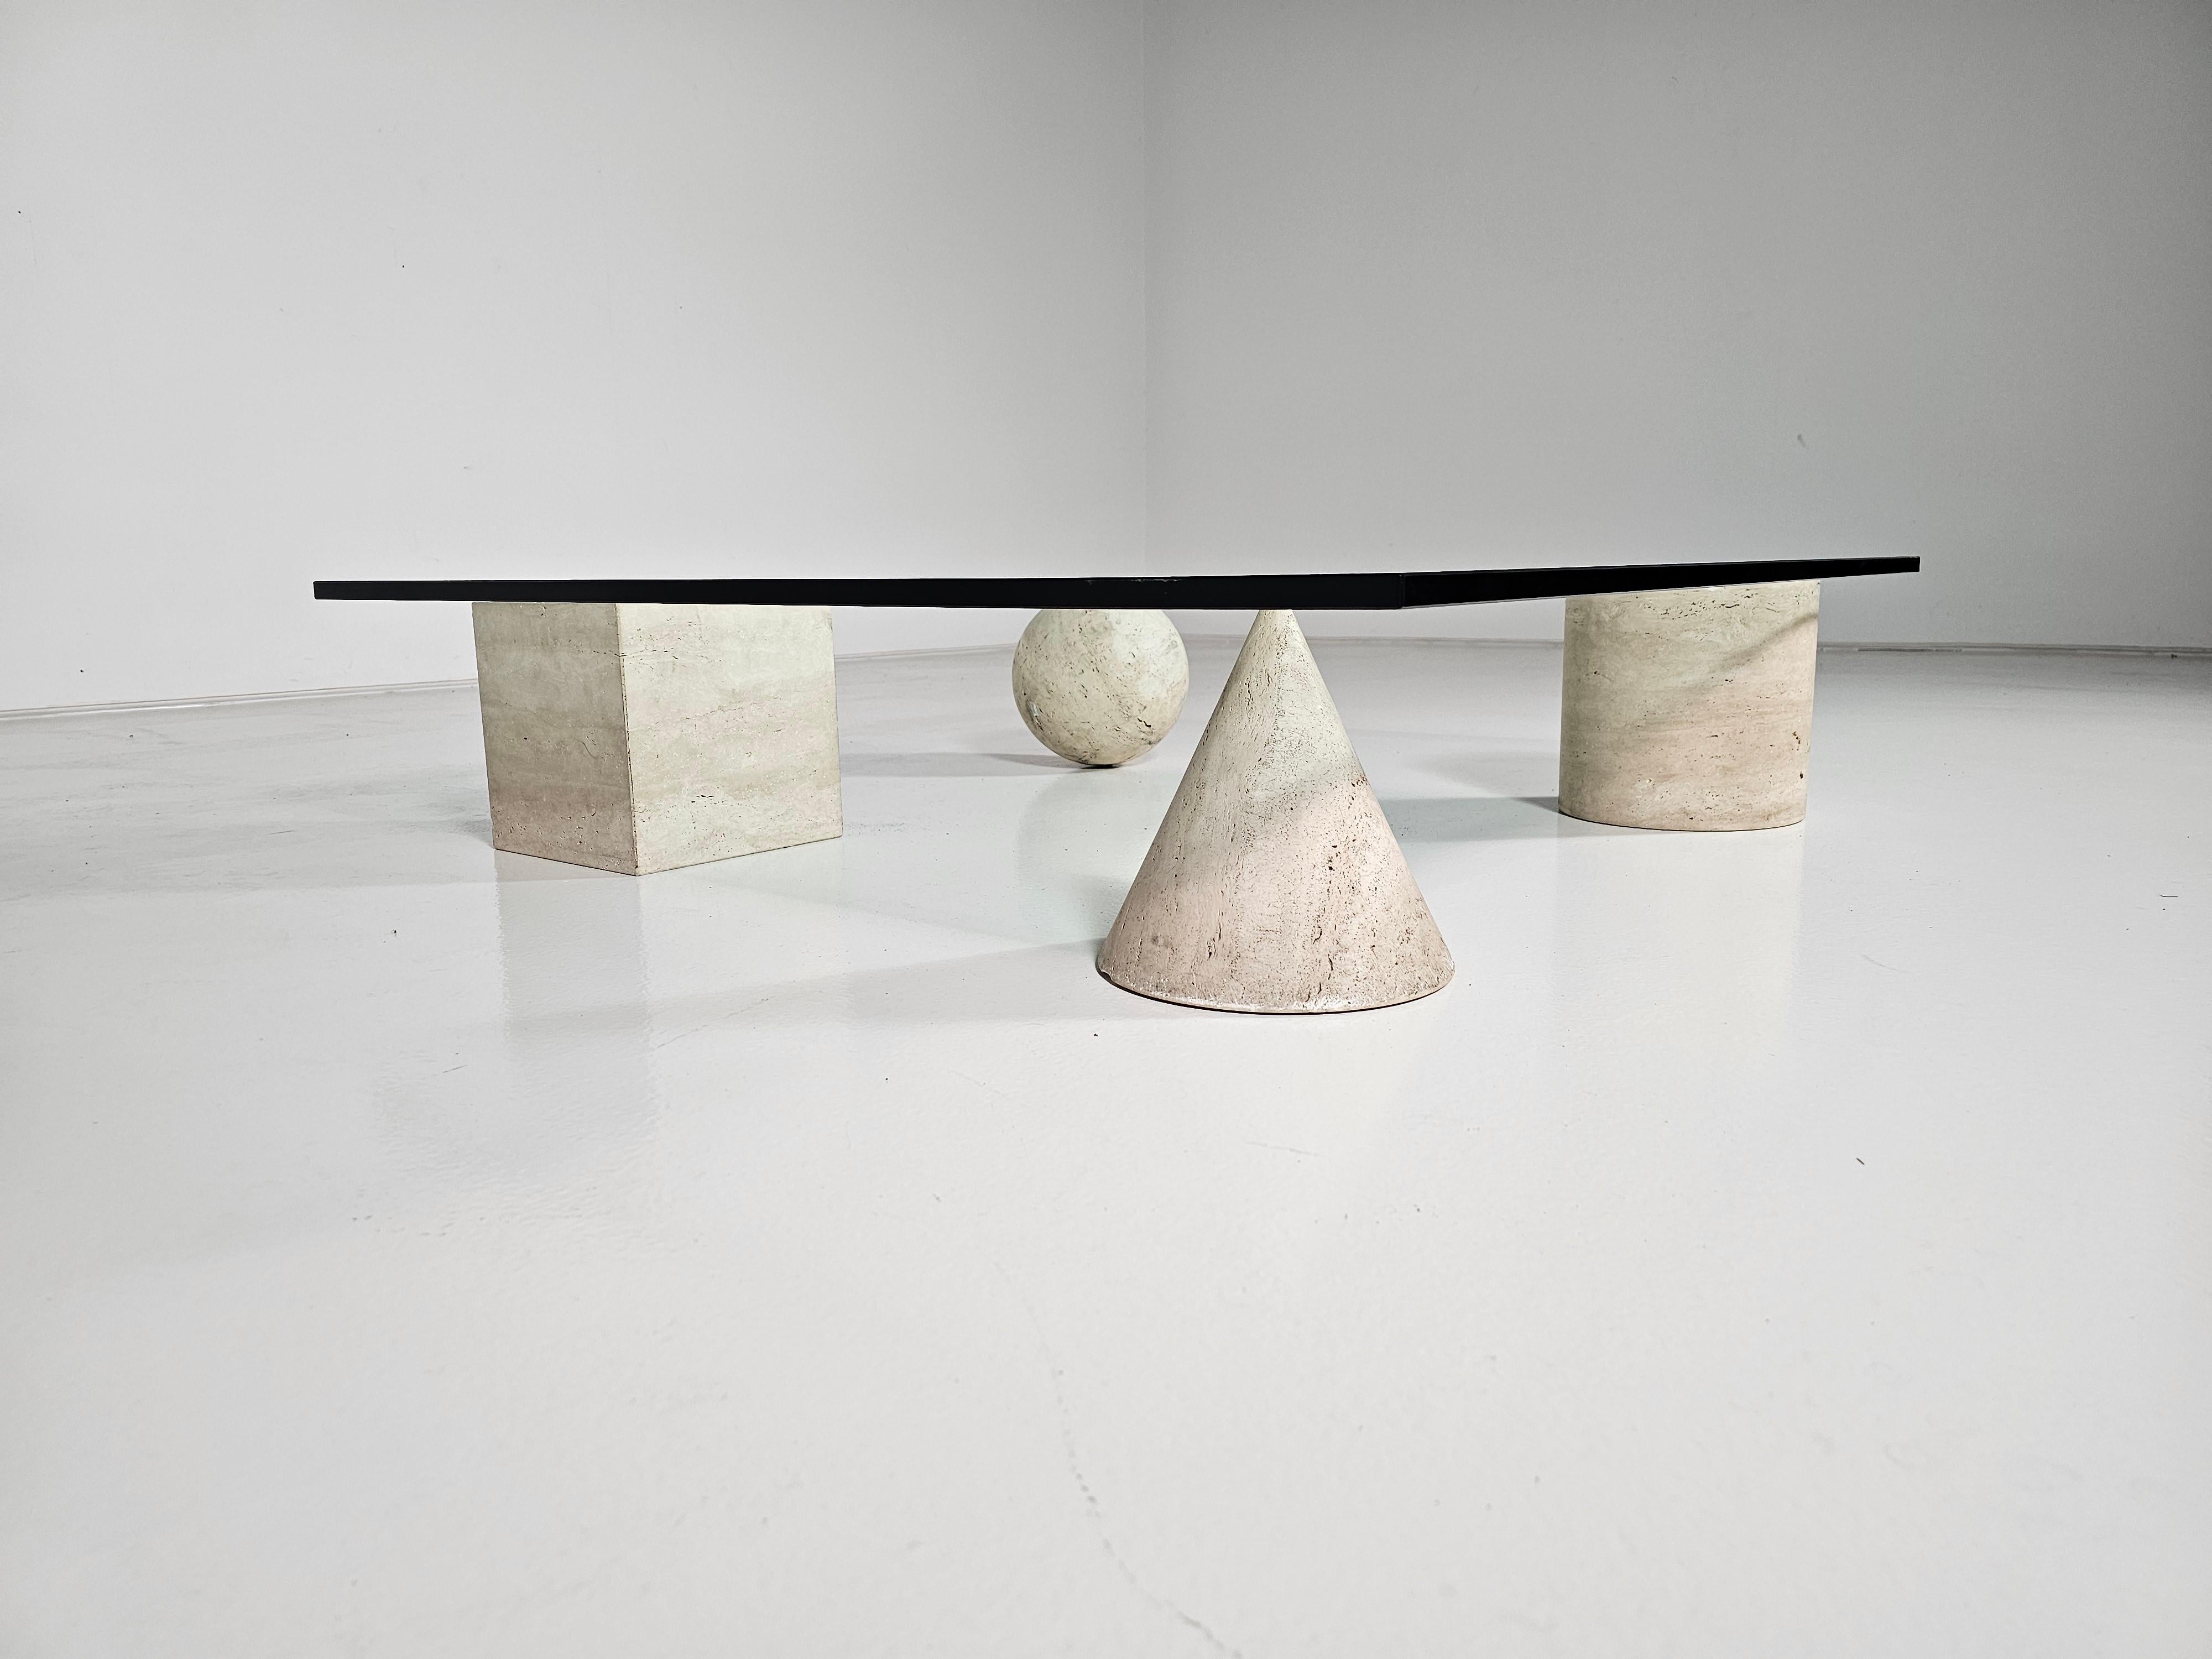 Table basse sculpturale en travertin Metafora, conçue par Lella et Massimo Vignelli dans les années 1970. Inspirés par les quatre formes de la géométrie euclidienne, le cube, la pyramide, le cylindre et la sphère, les quatre éléments peuvent être